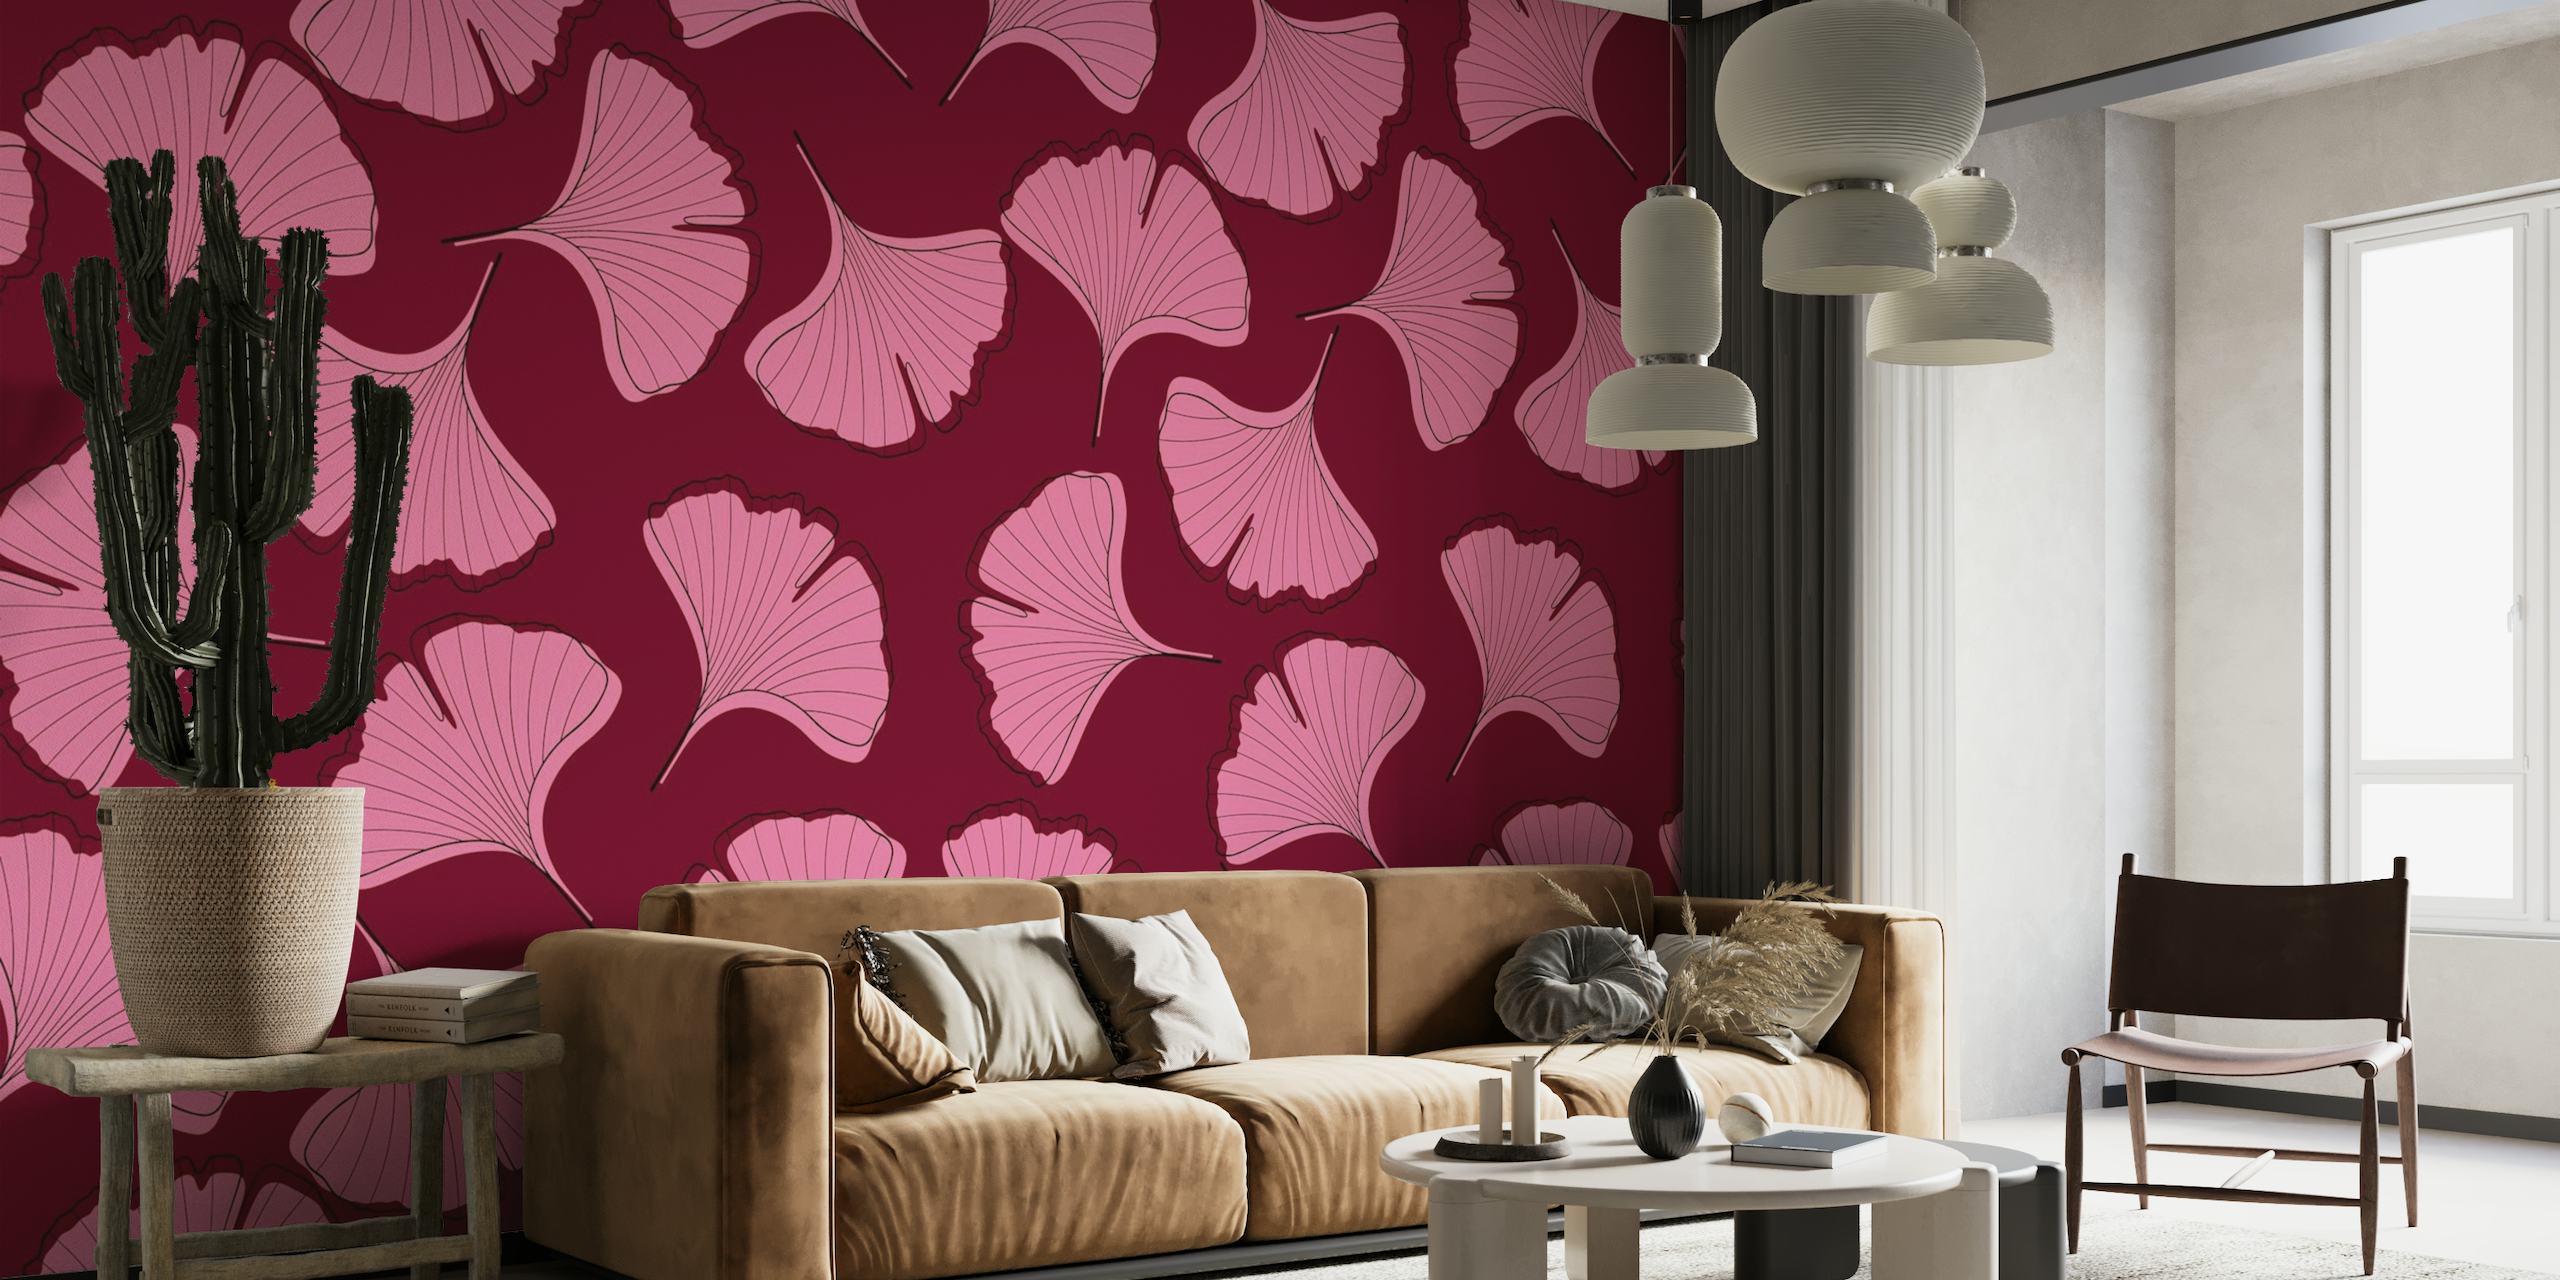 Ginkgo biloba bladmønster vægmaleri i pink og rødbrun